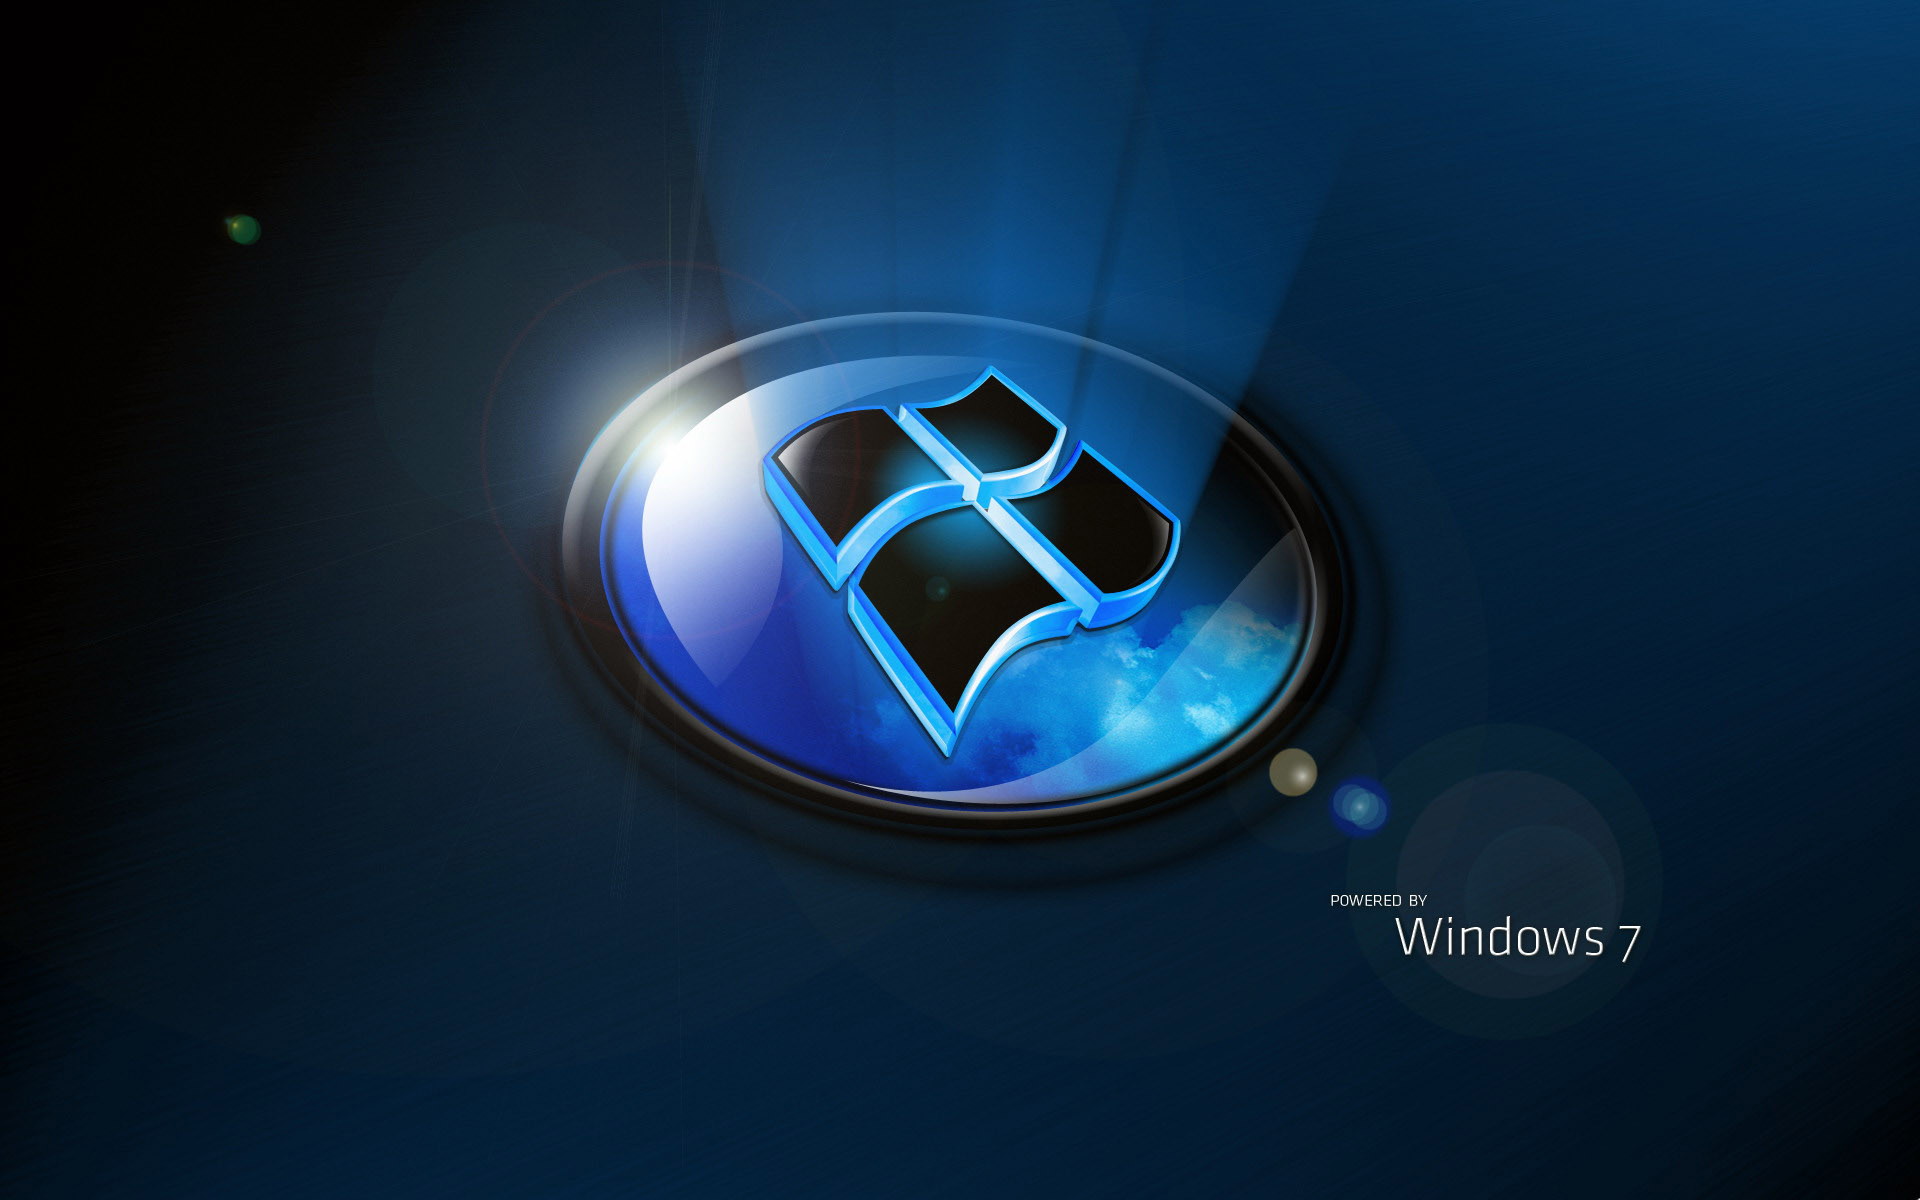 Desktop Wallpaper · Gallery · Windows 7 · Windows 7 Window plane ...